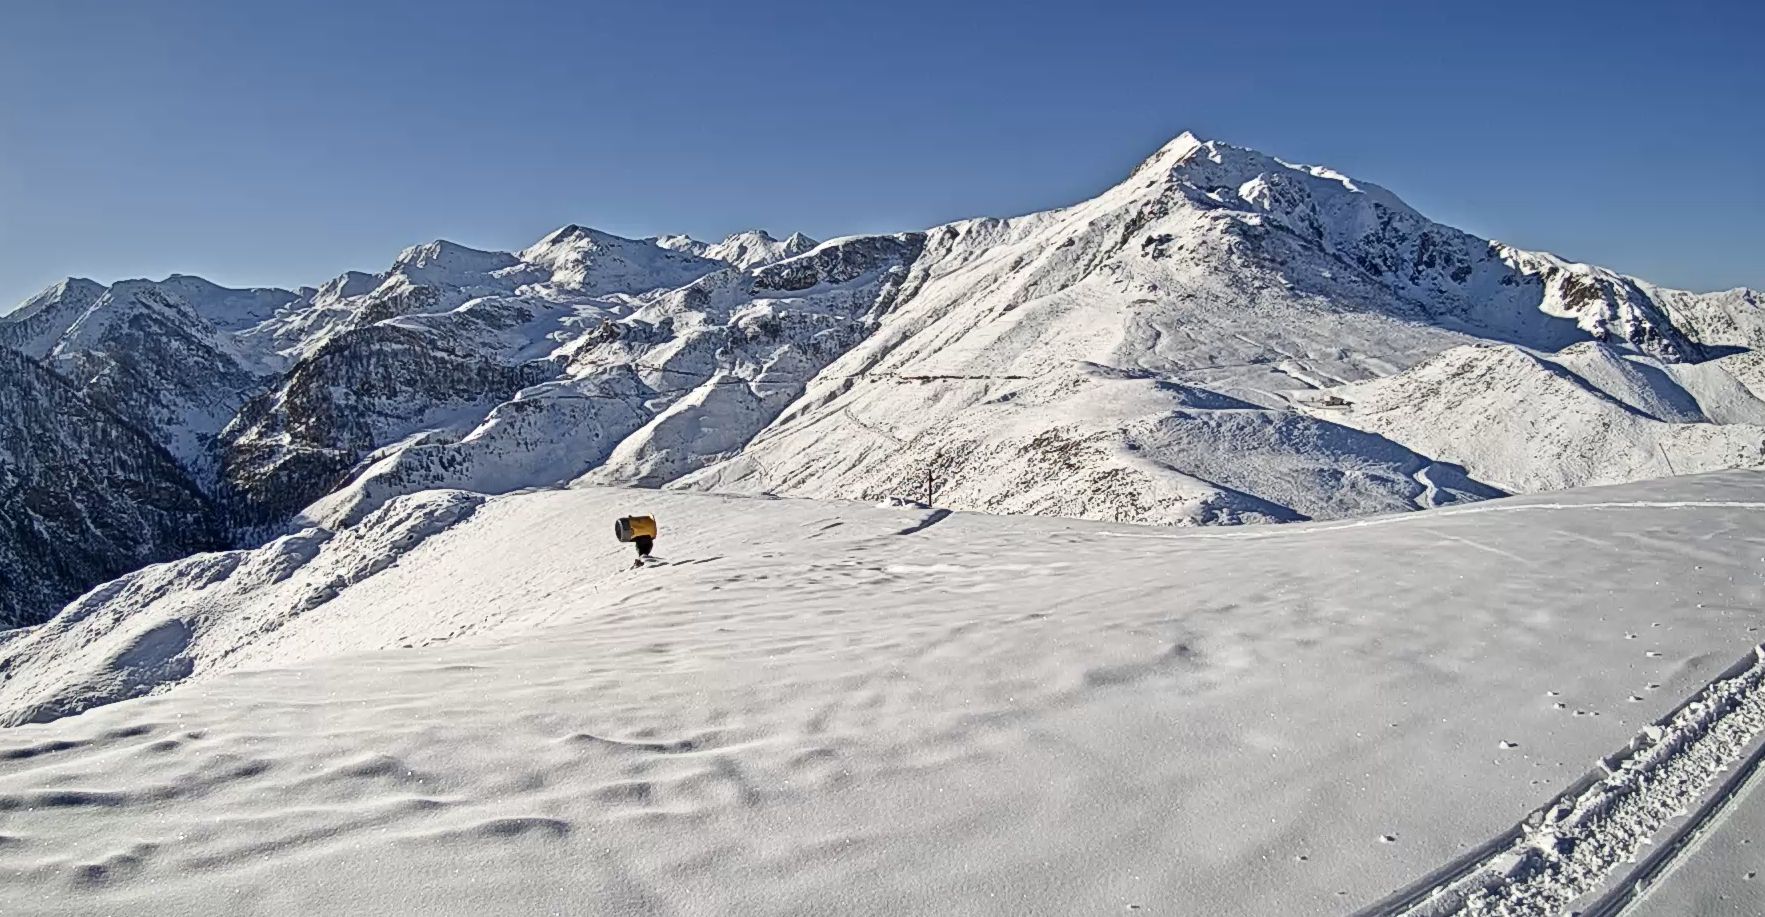 Na de verse sneeuw van afgelopen weekend kan Prato Nevoso in Piemonte weer een mooie laag sneeuw verwachten